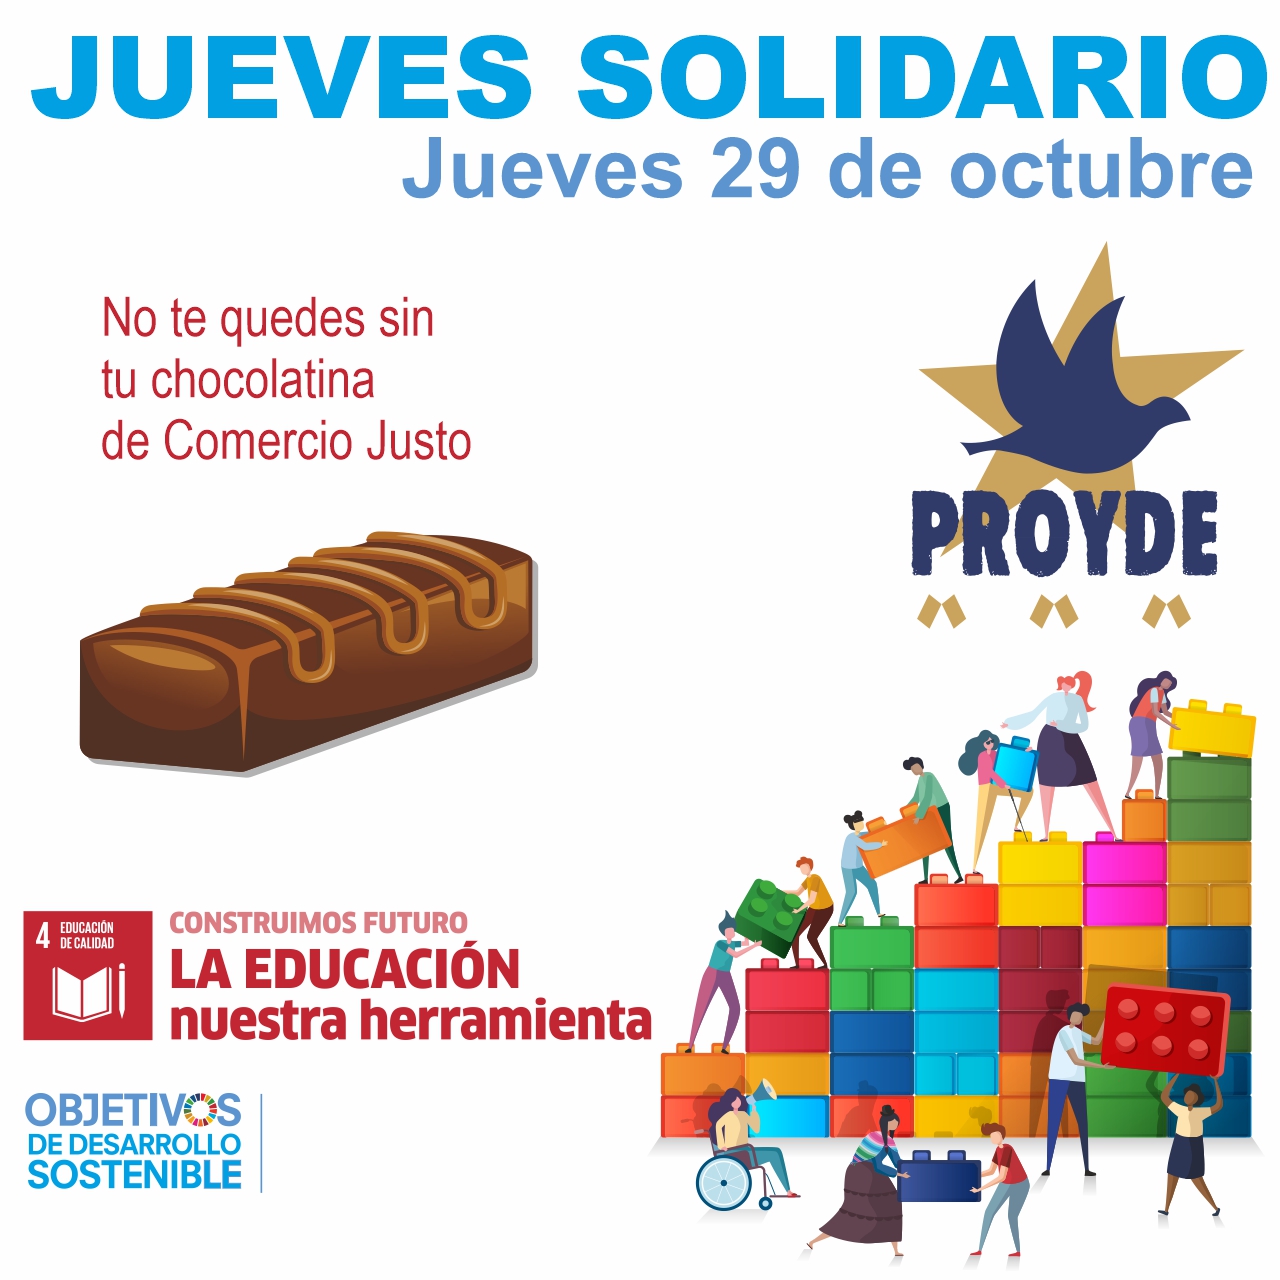 Jueves Solidario